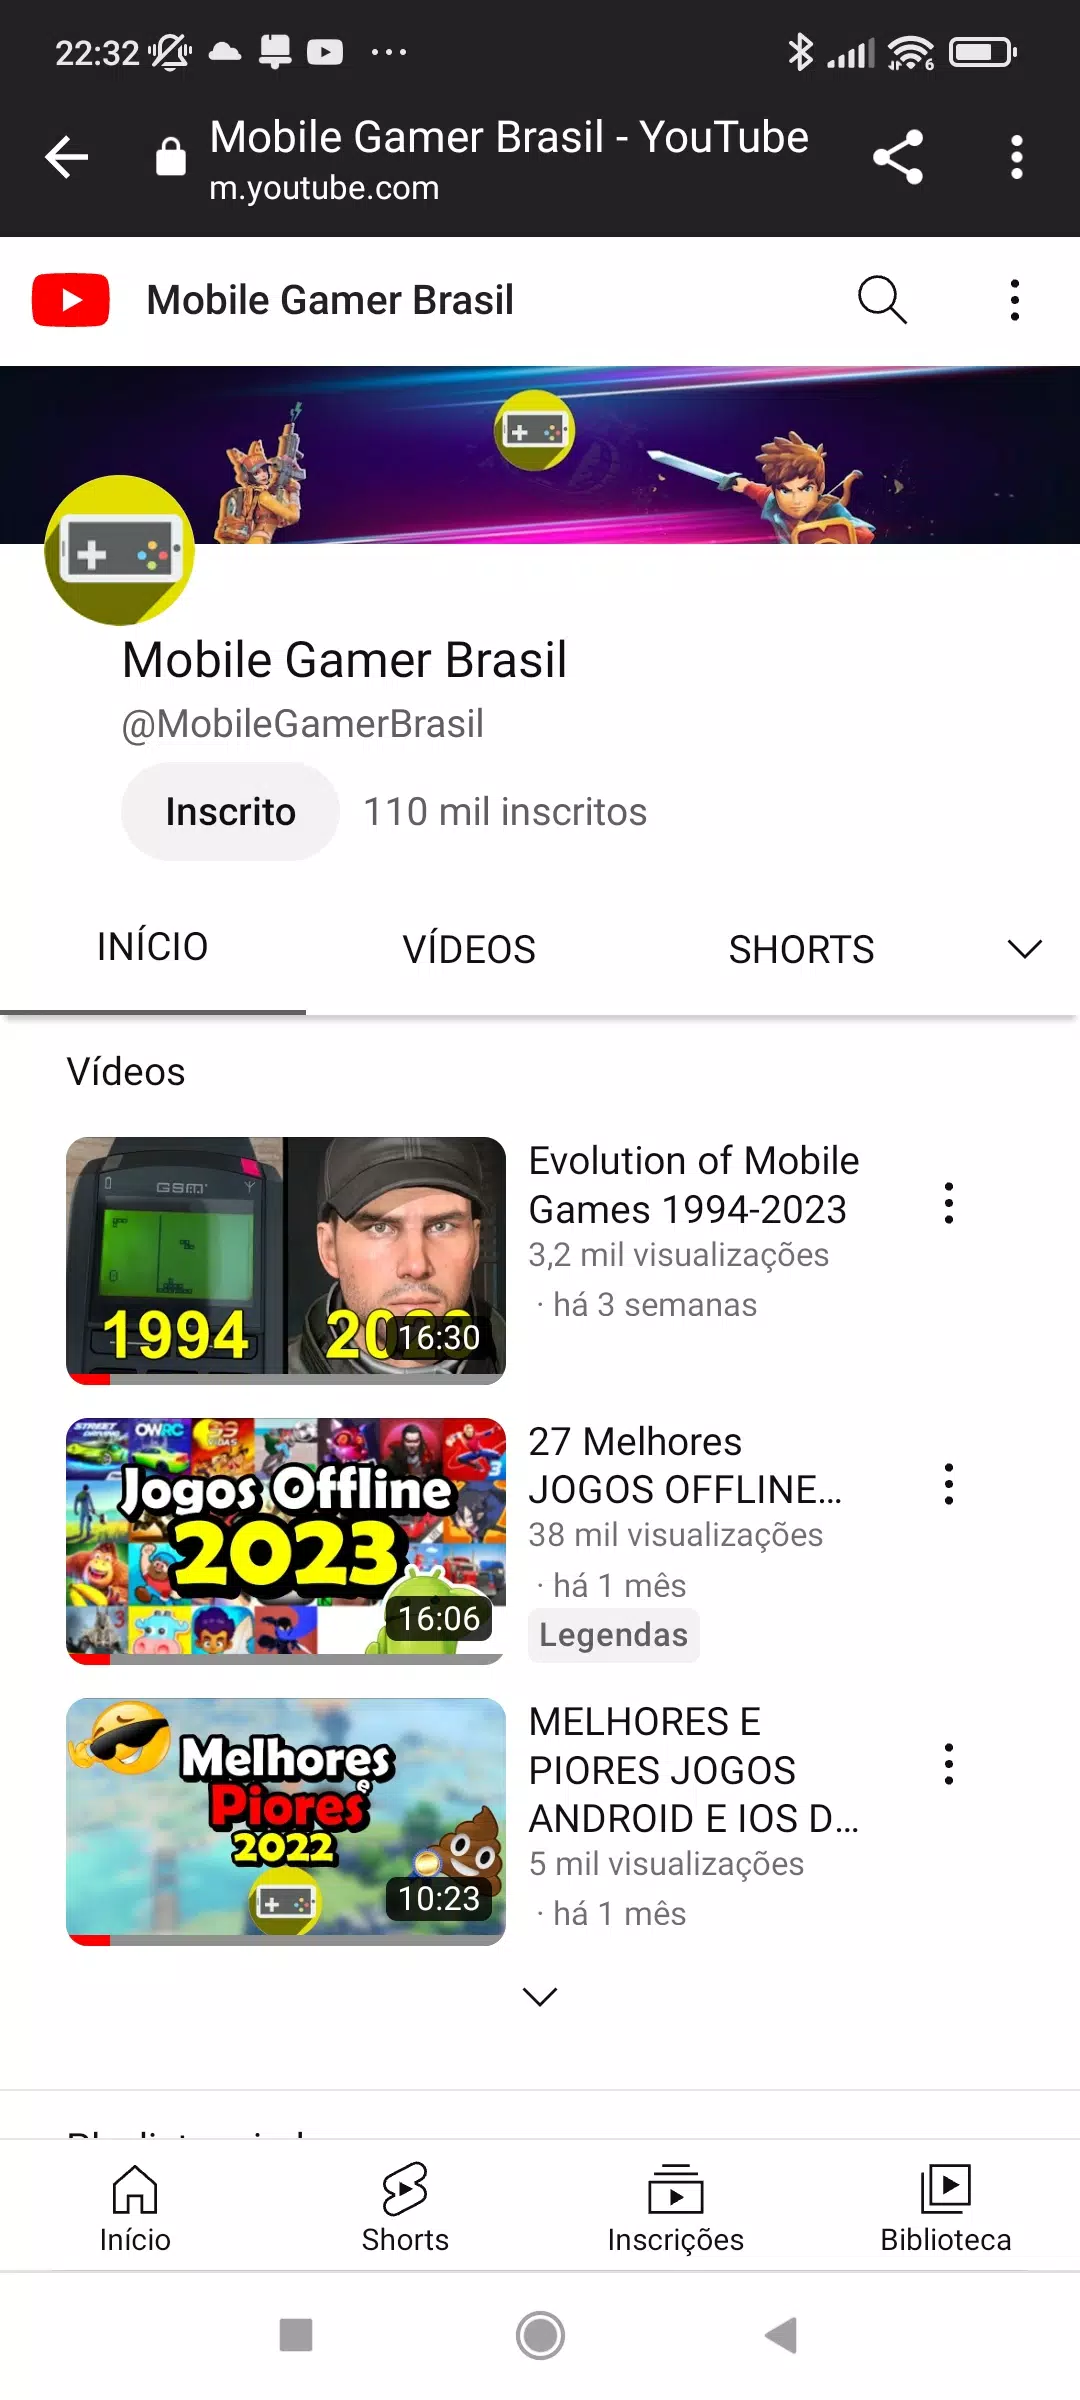 Mobile Gamer Brasil